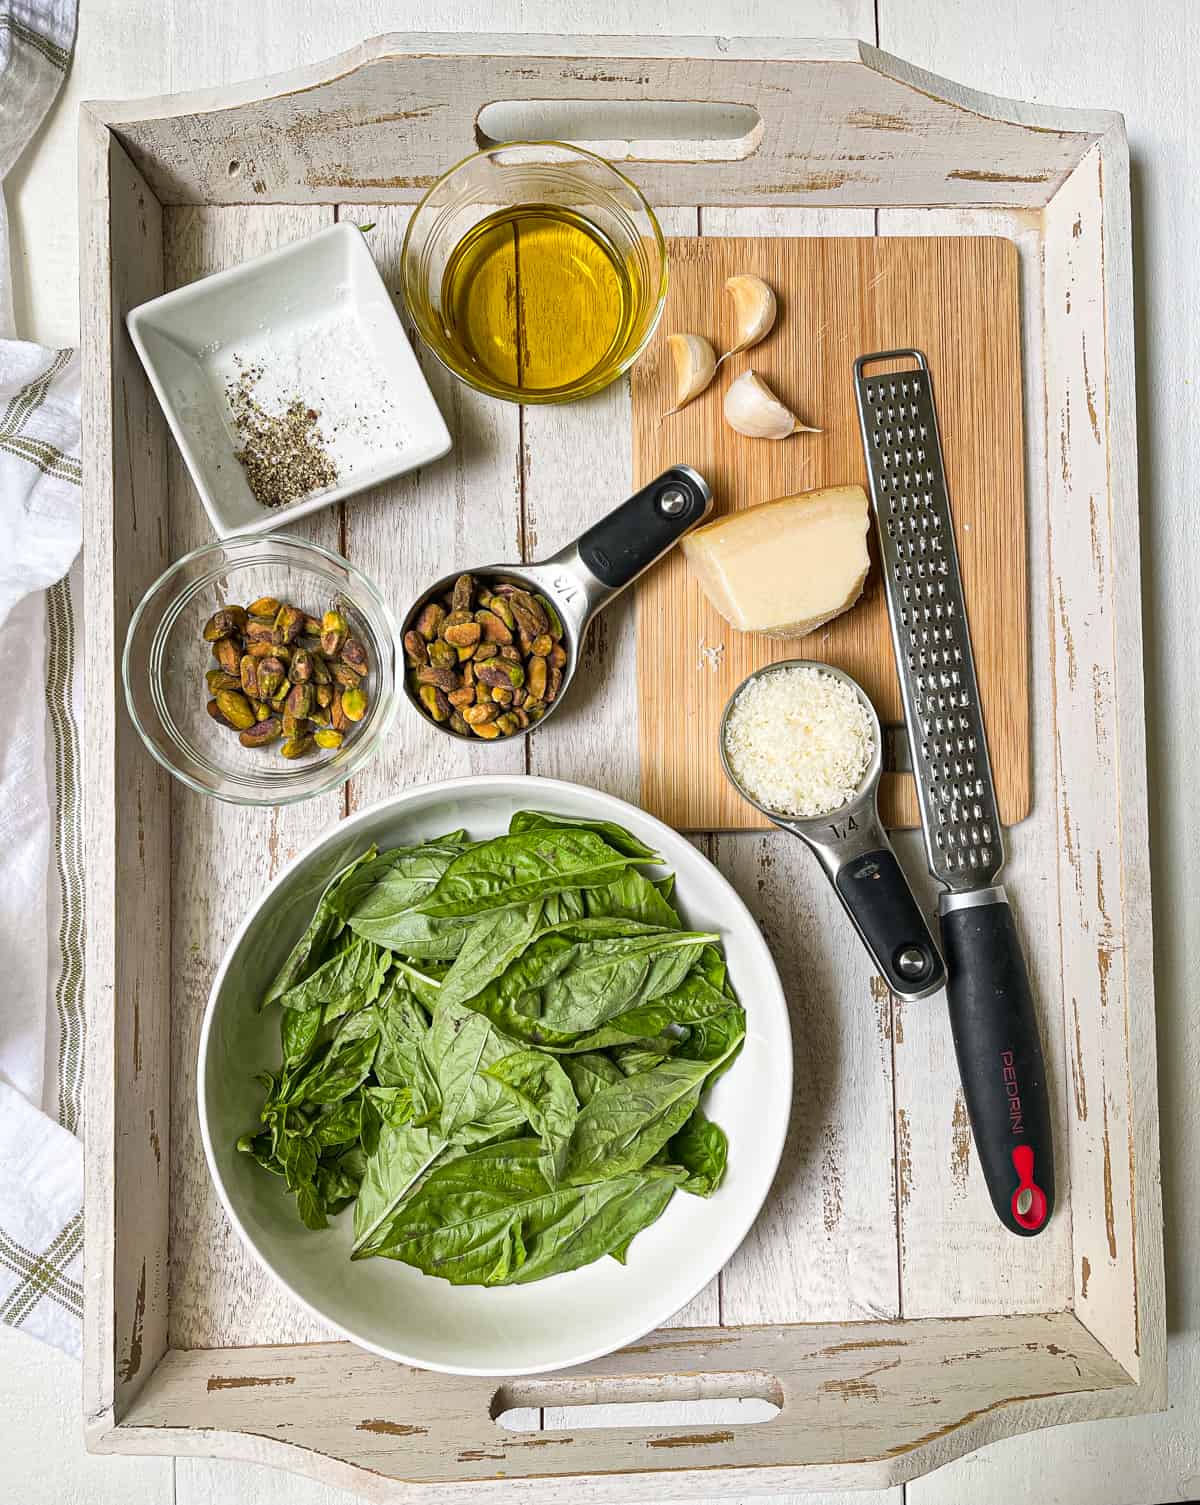 Ingredients to make pistachio pesto on a white tray.